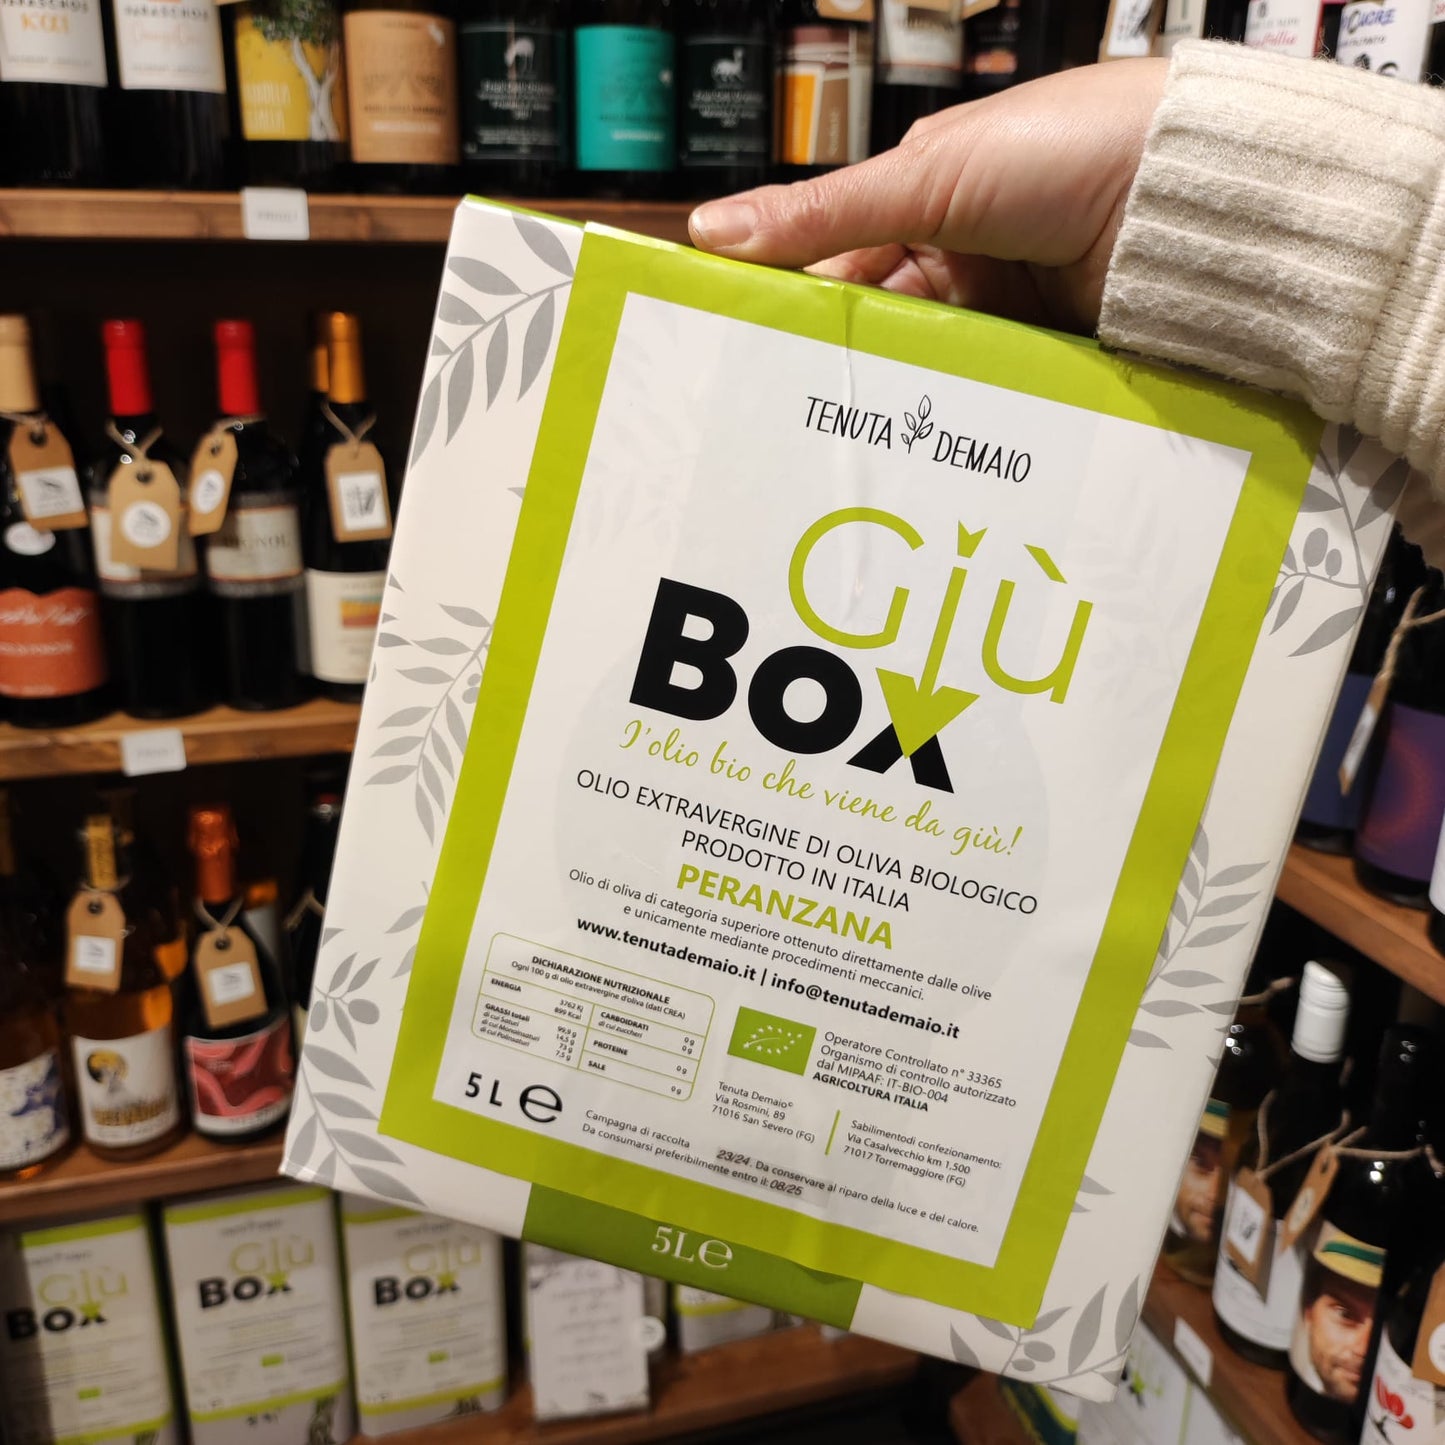 GiùBOX Peranzana olio EVO Bag in Box 5LT - Tenuta Demaio